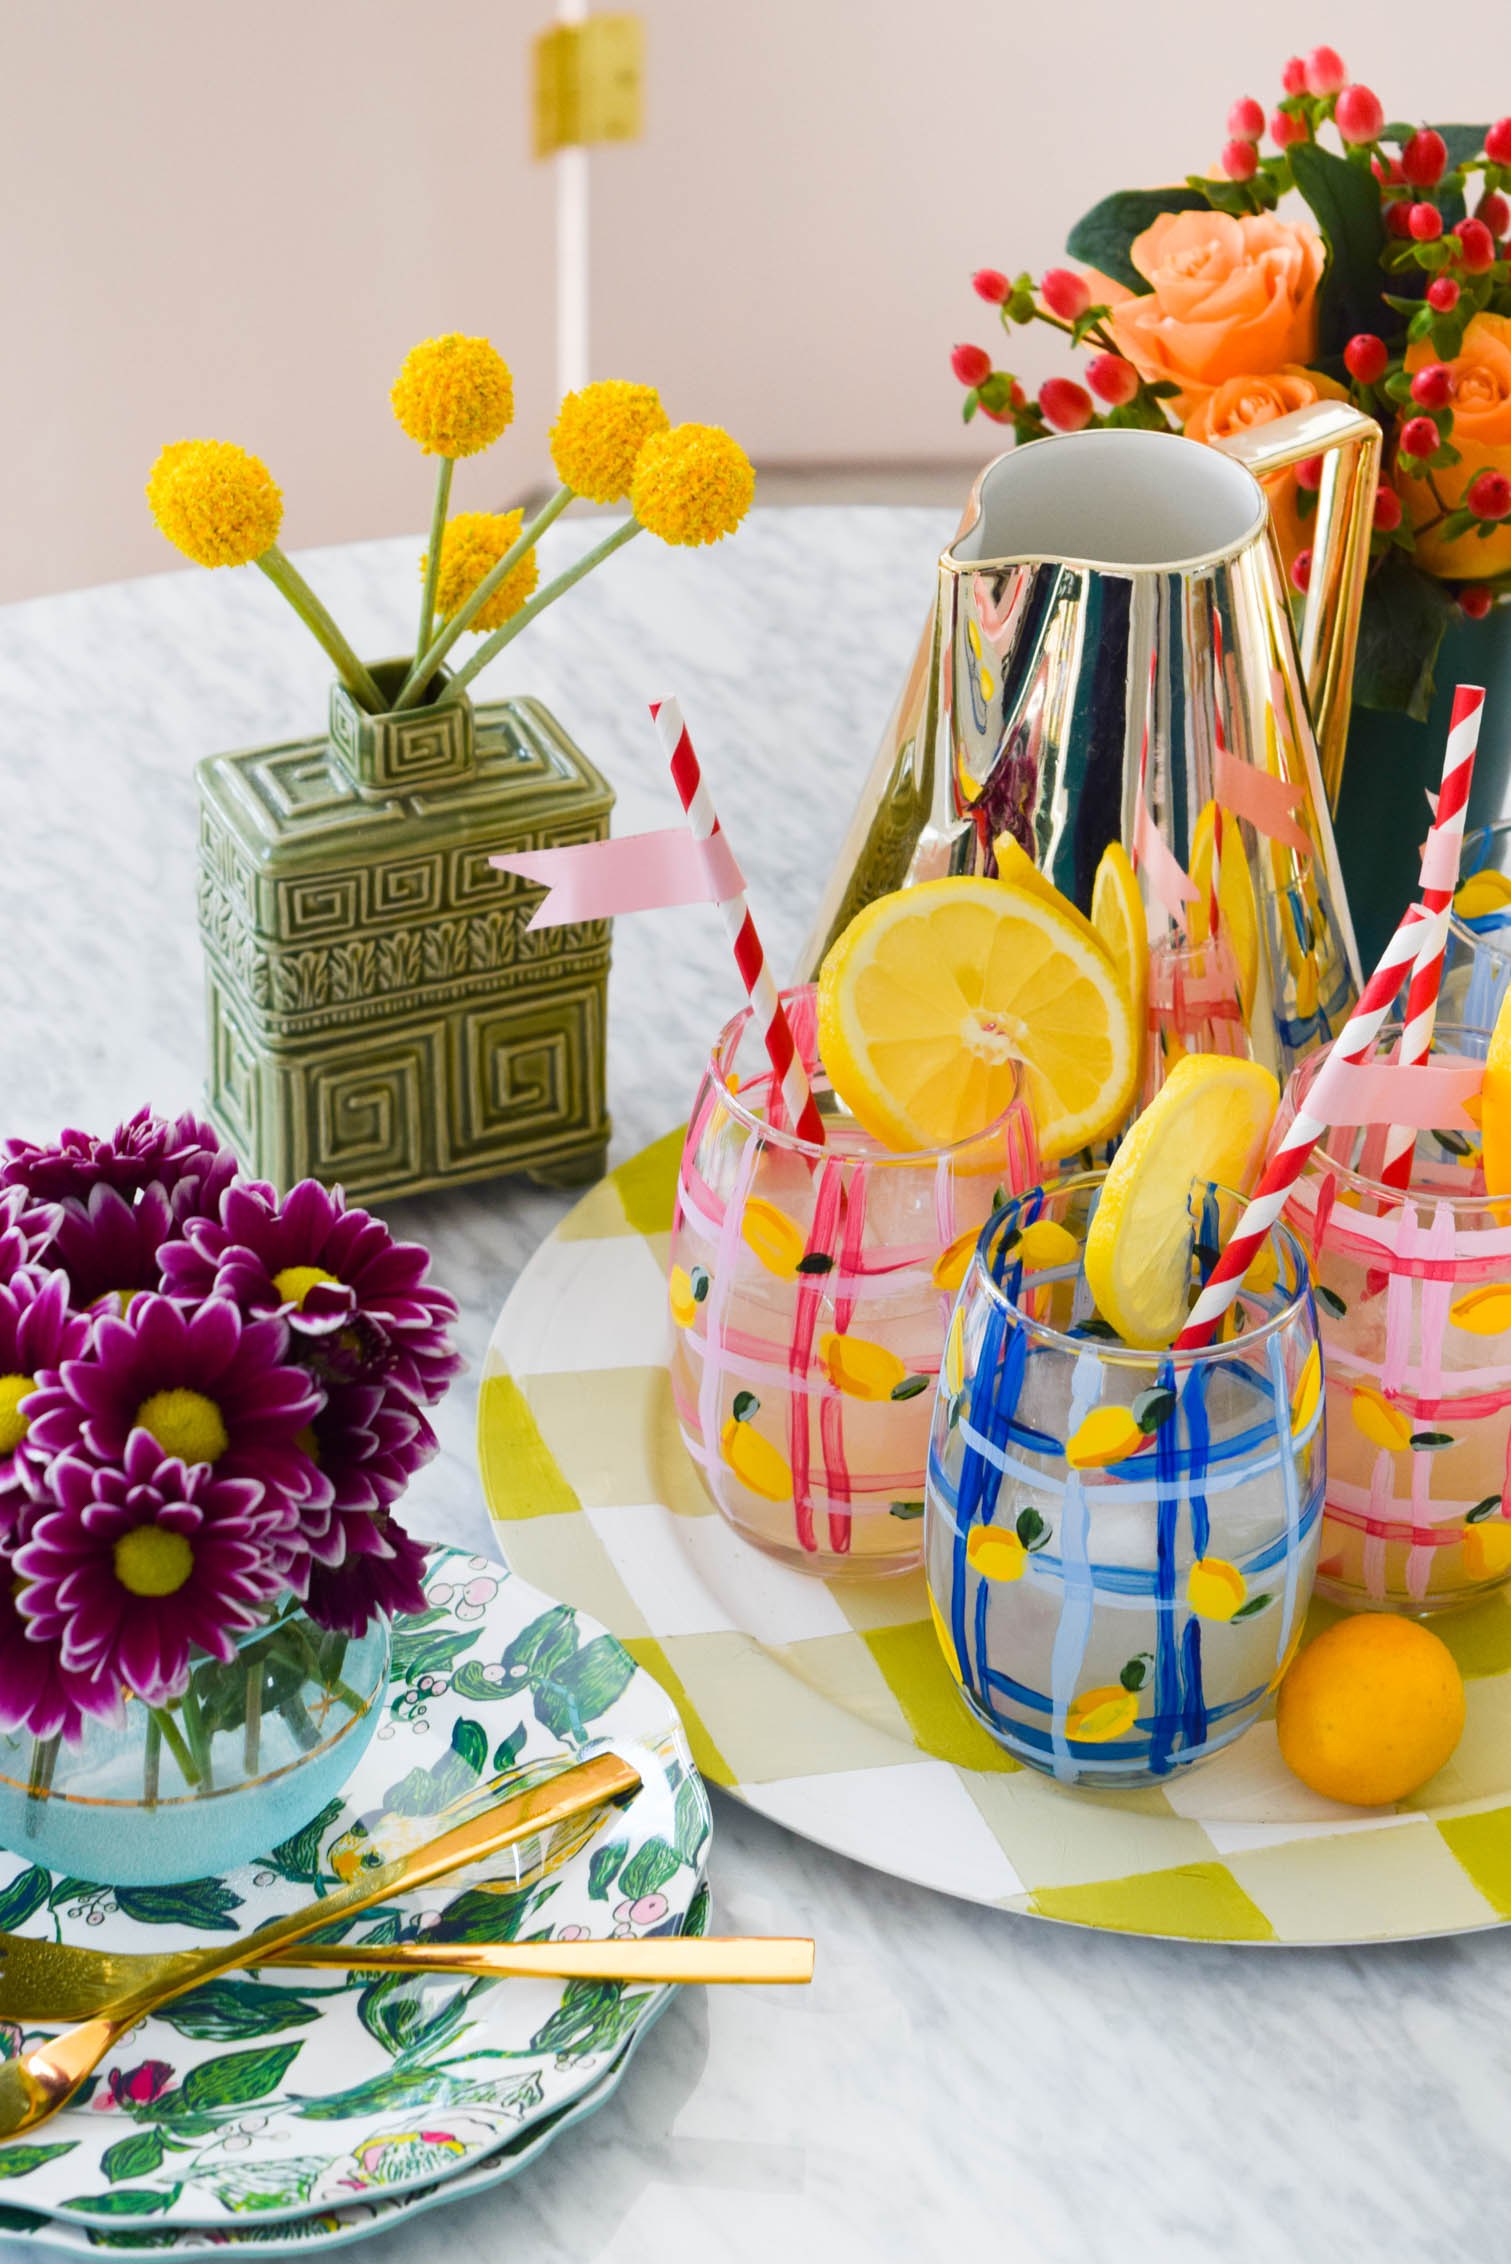 activité manuelle été, verre décoré de motif citron jaune et des bandes bleues et rose dans un plateau de service, bouquet de fleurs